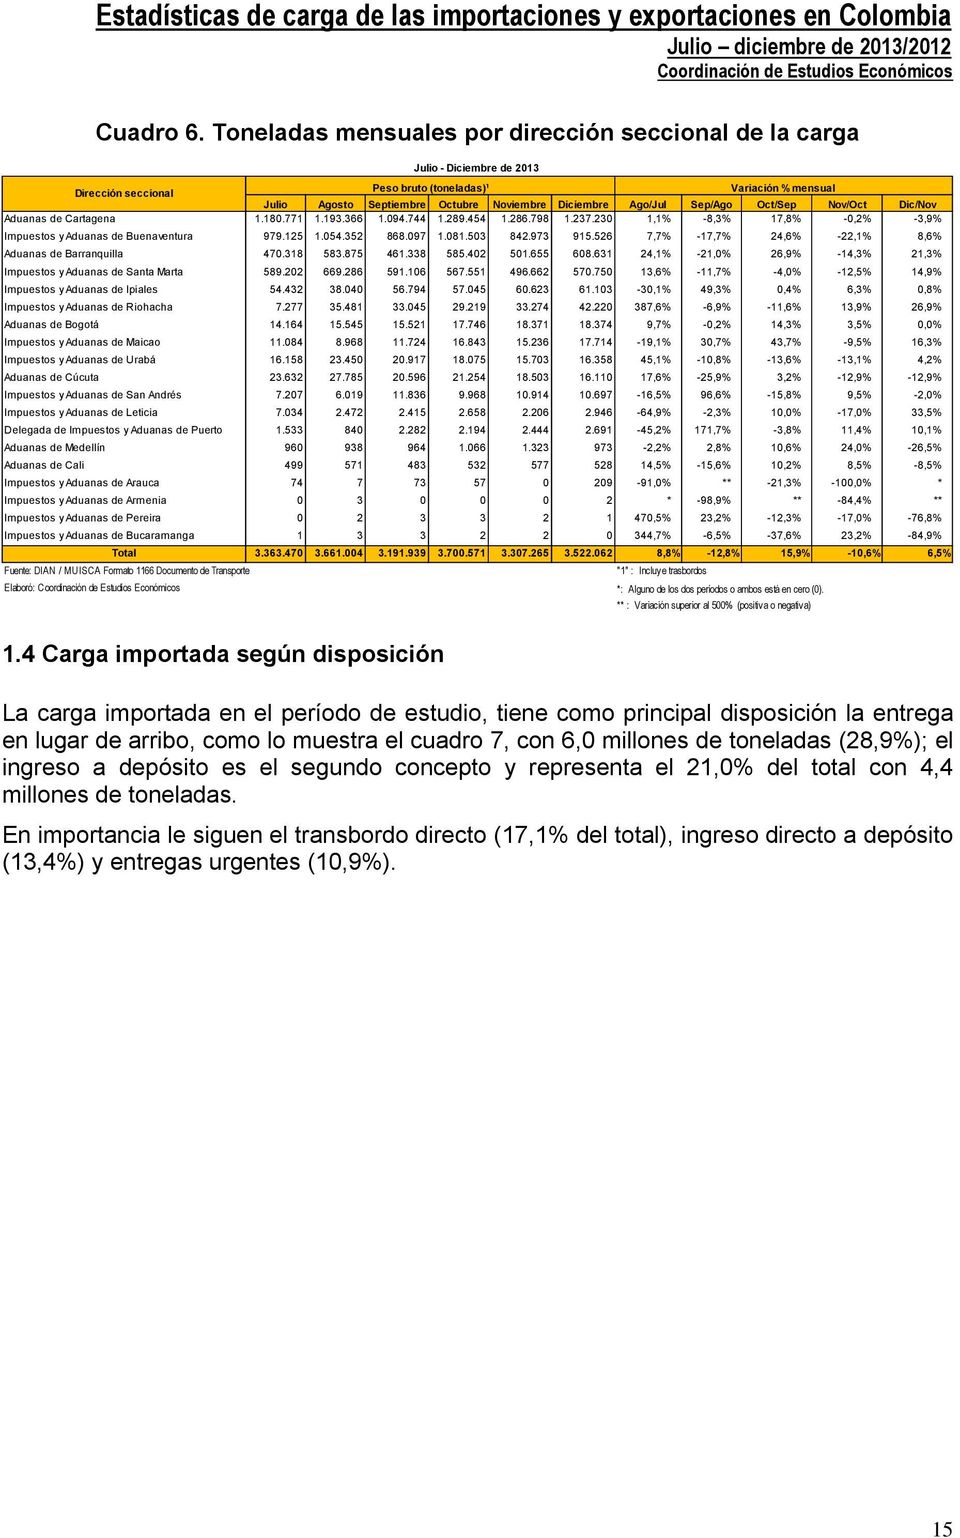 Nov/Oct Dic/Nov Aduanas de Cartagena 1.180.771 1.193.366 1.094.744 1.289.454 1.286.798 1.237.230 1,1% -8,3% 17,8% -0,2% -3,9% Impuestos y Aduanas de Buenaventura 979.125 1.054.352 868.097 1.081.